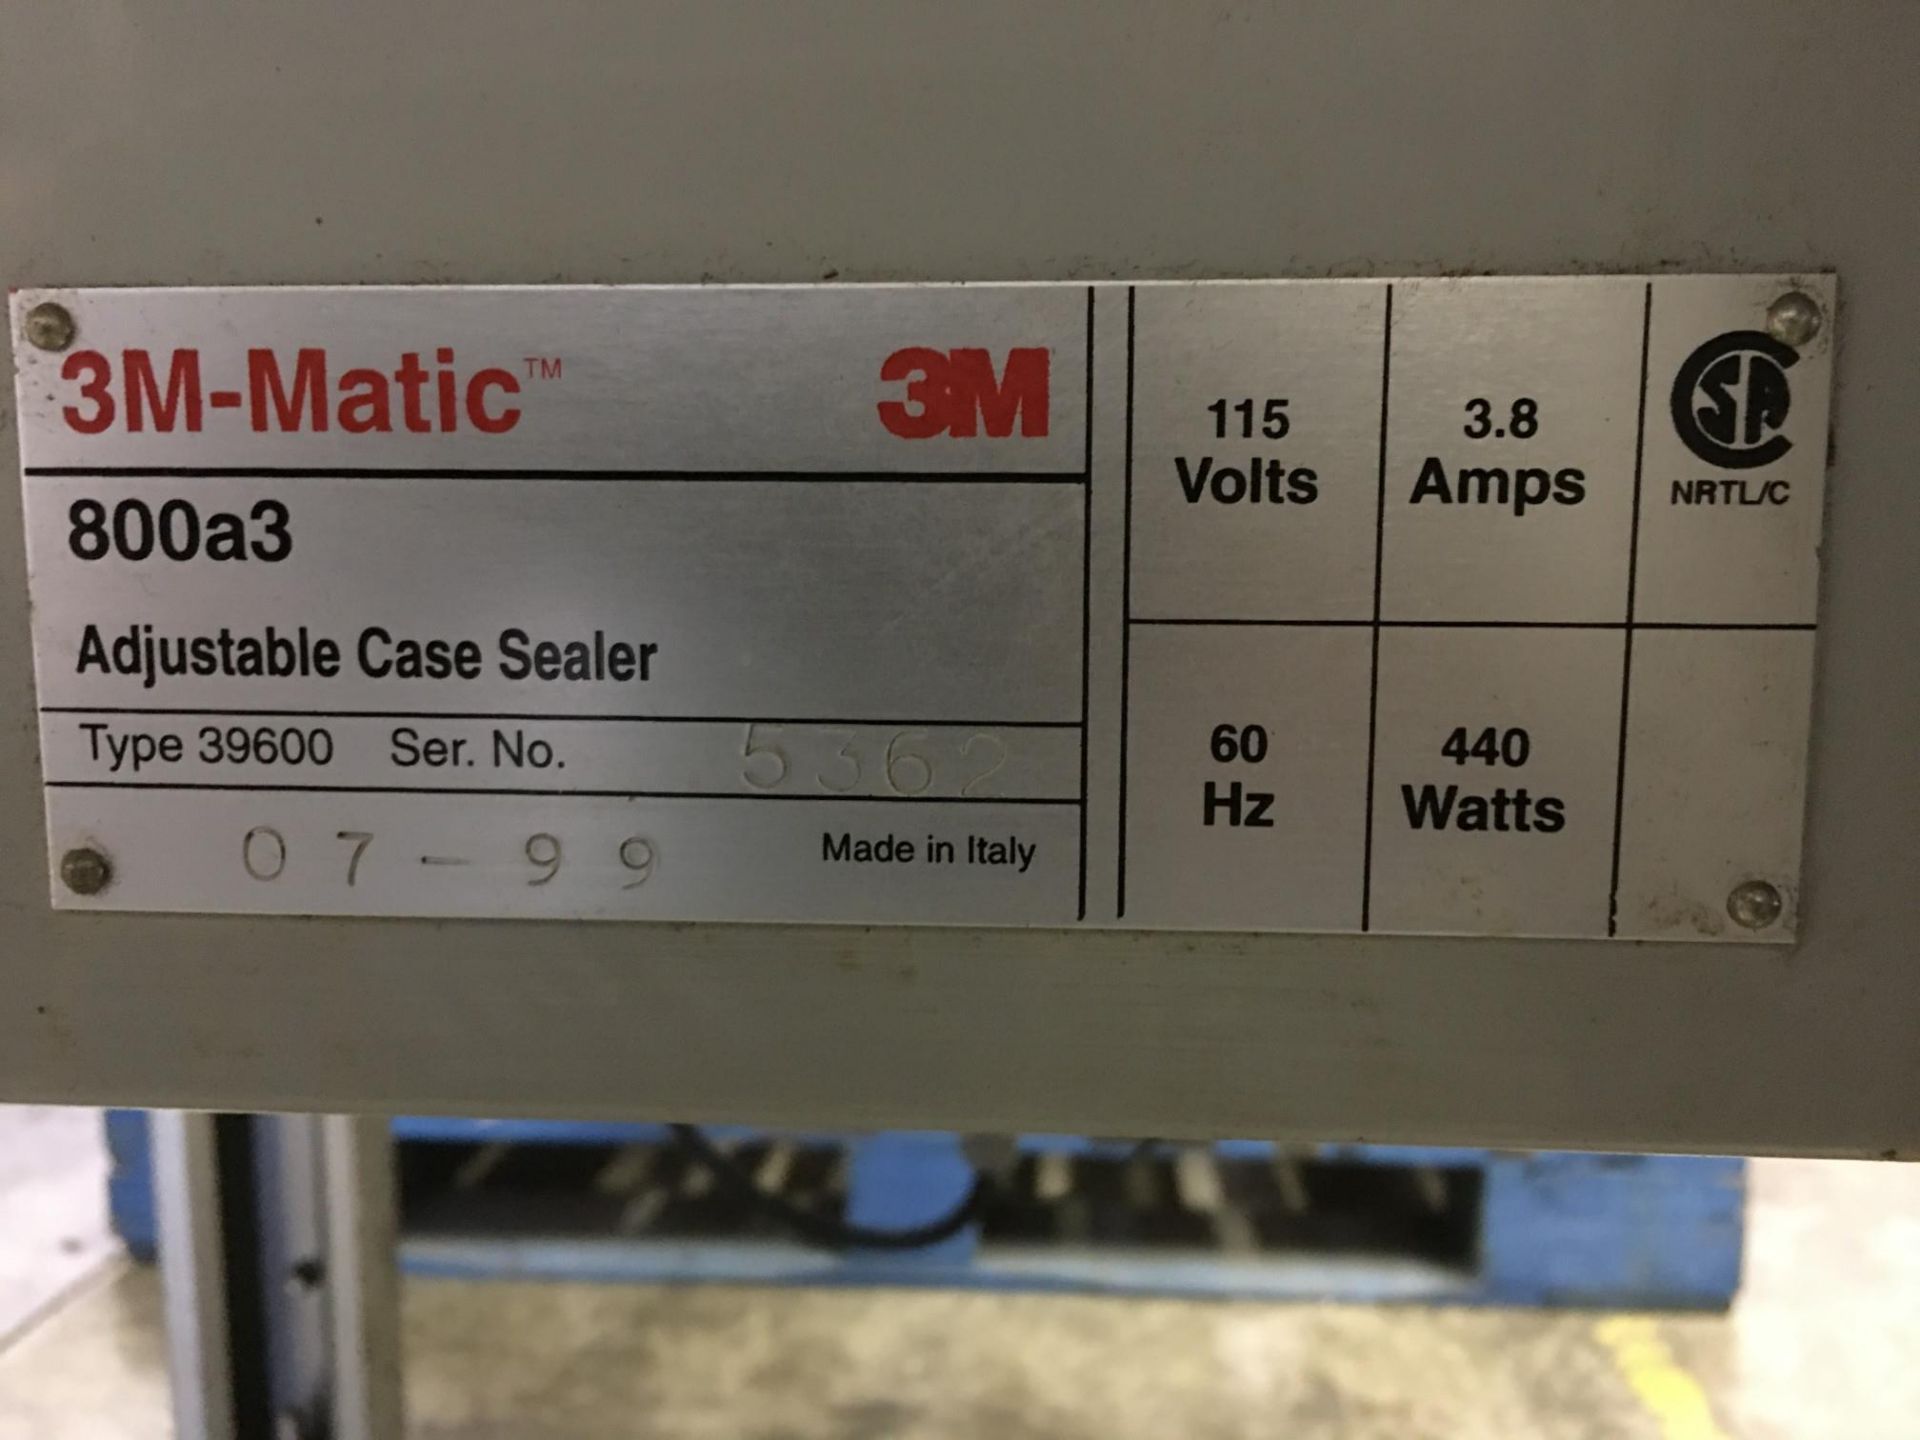 3M-Matic Adjustable Case Sealer - Image 4 of 4